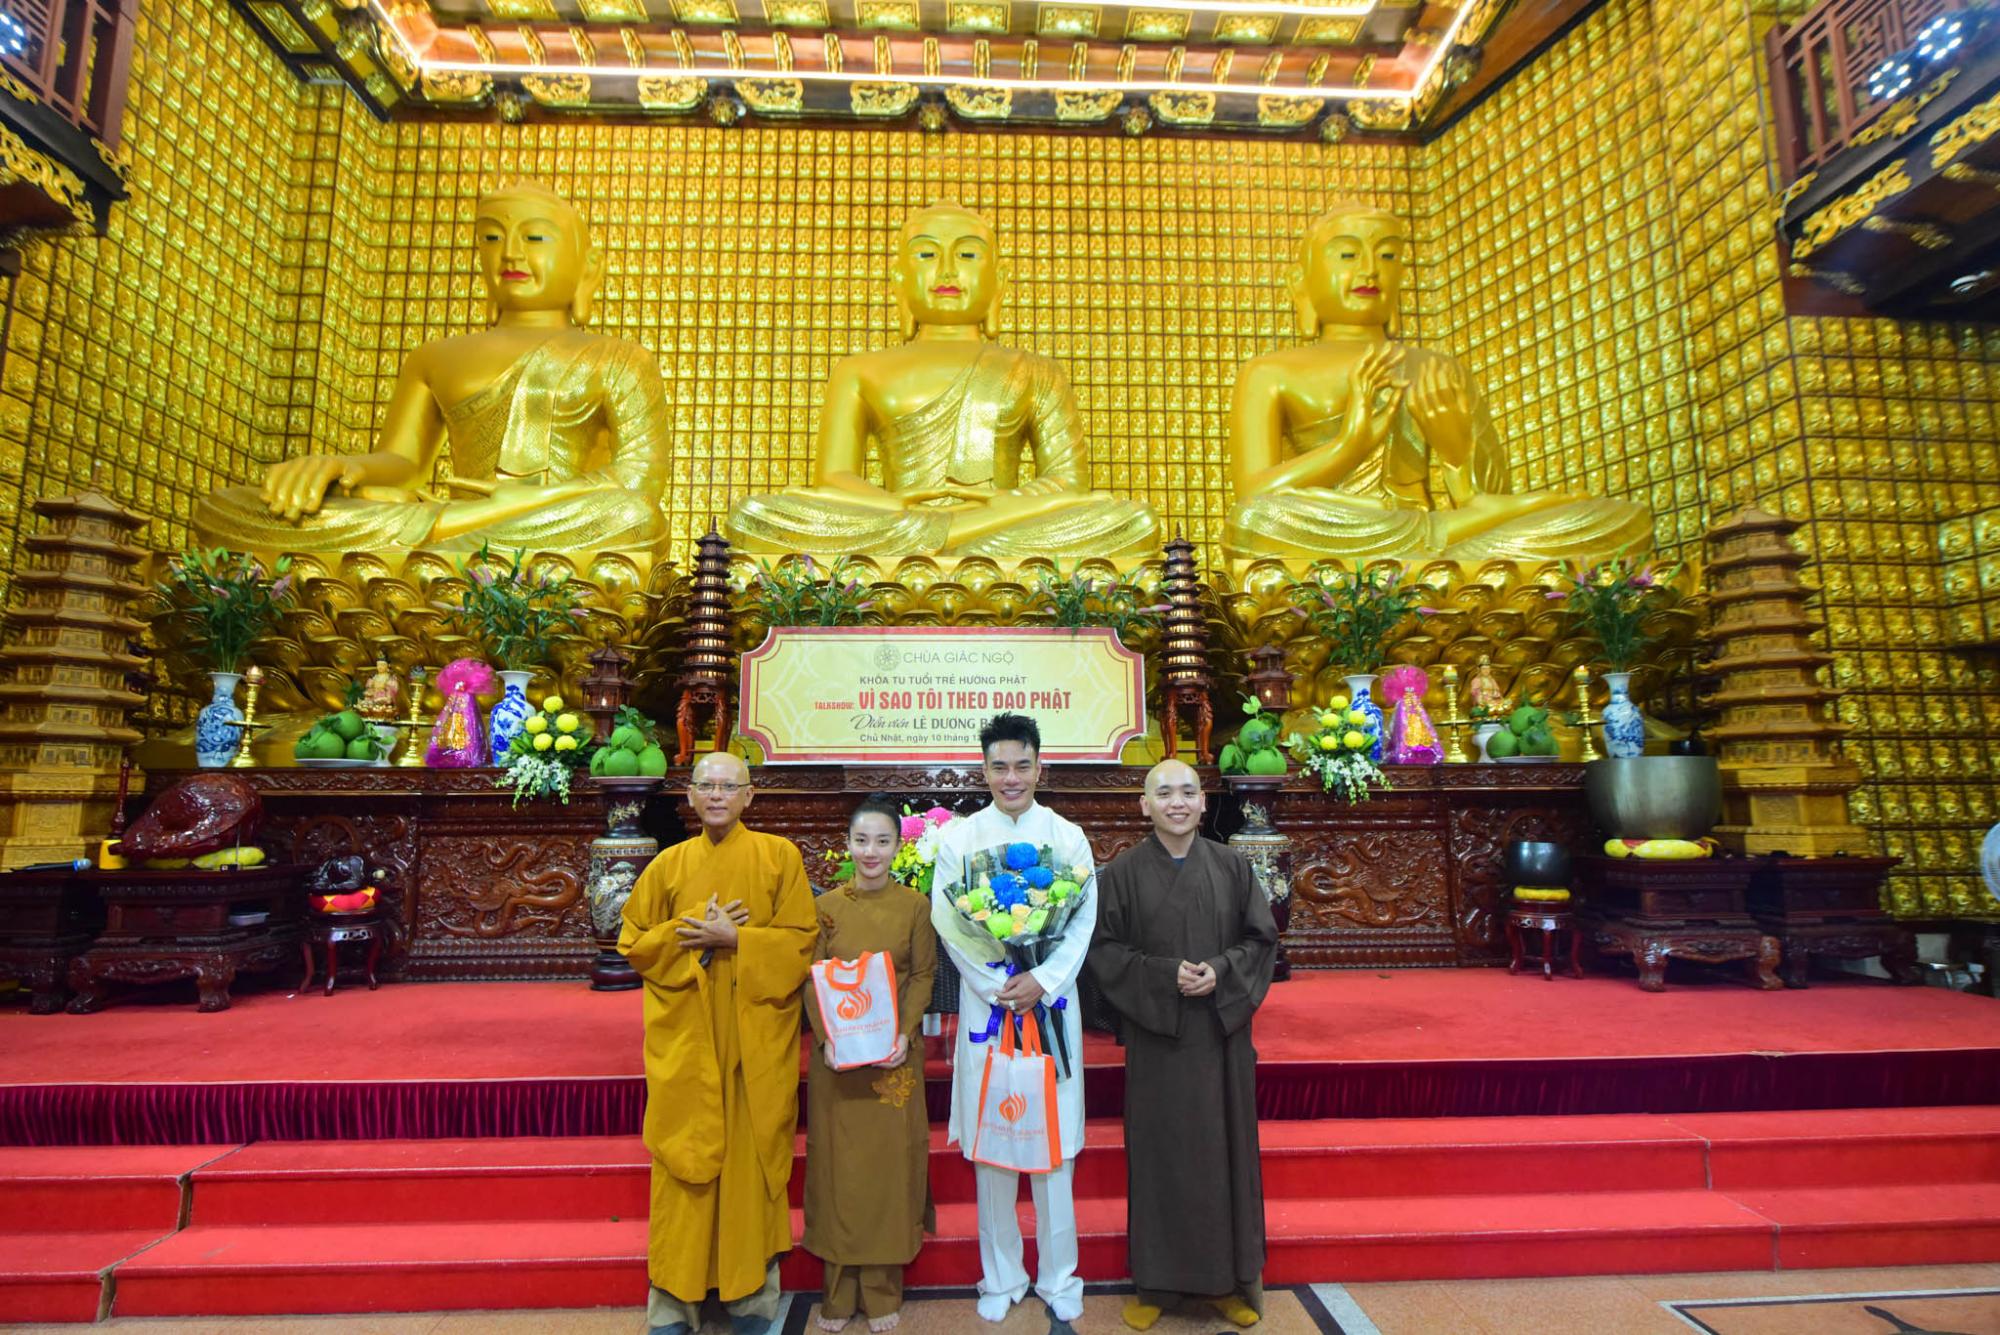 Phật tử Diệu Lâm về chùa Giác ngộ giao lưu với gần 1.000 Phật tử trẻ